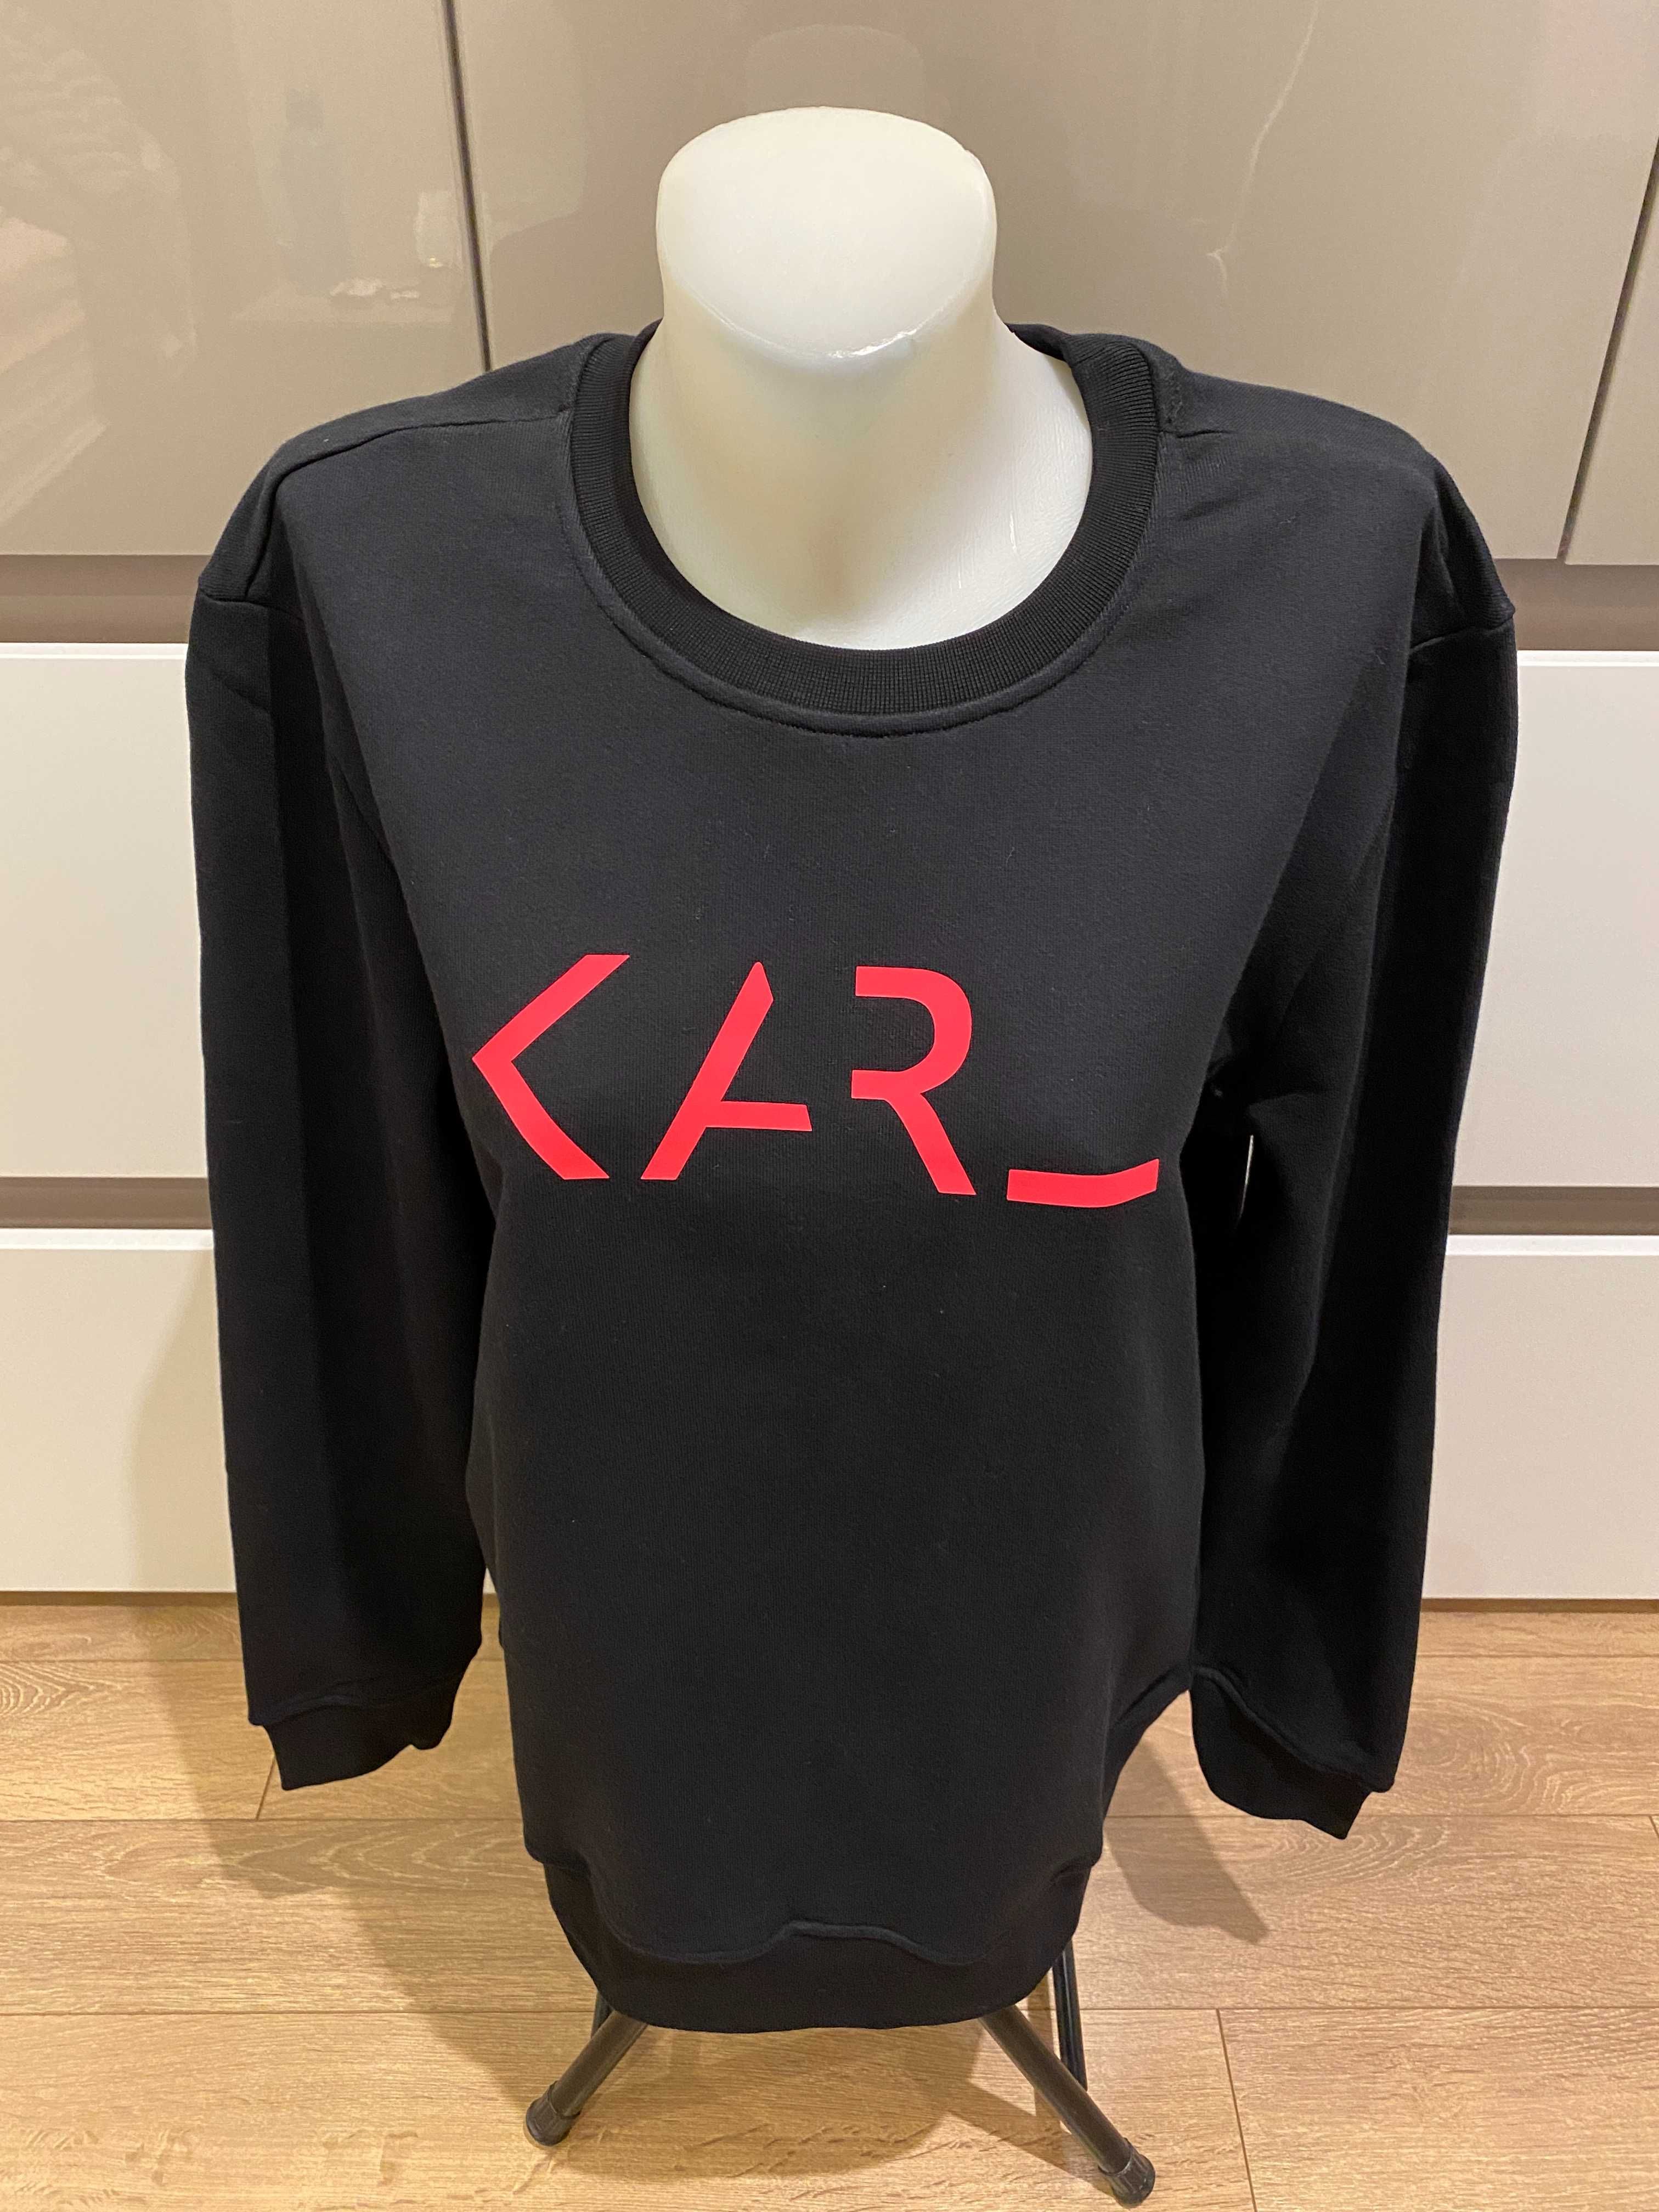 Оригинална дамска блуза Karl Lagerfeld, черна , размери: L и XL